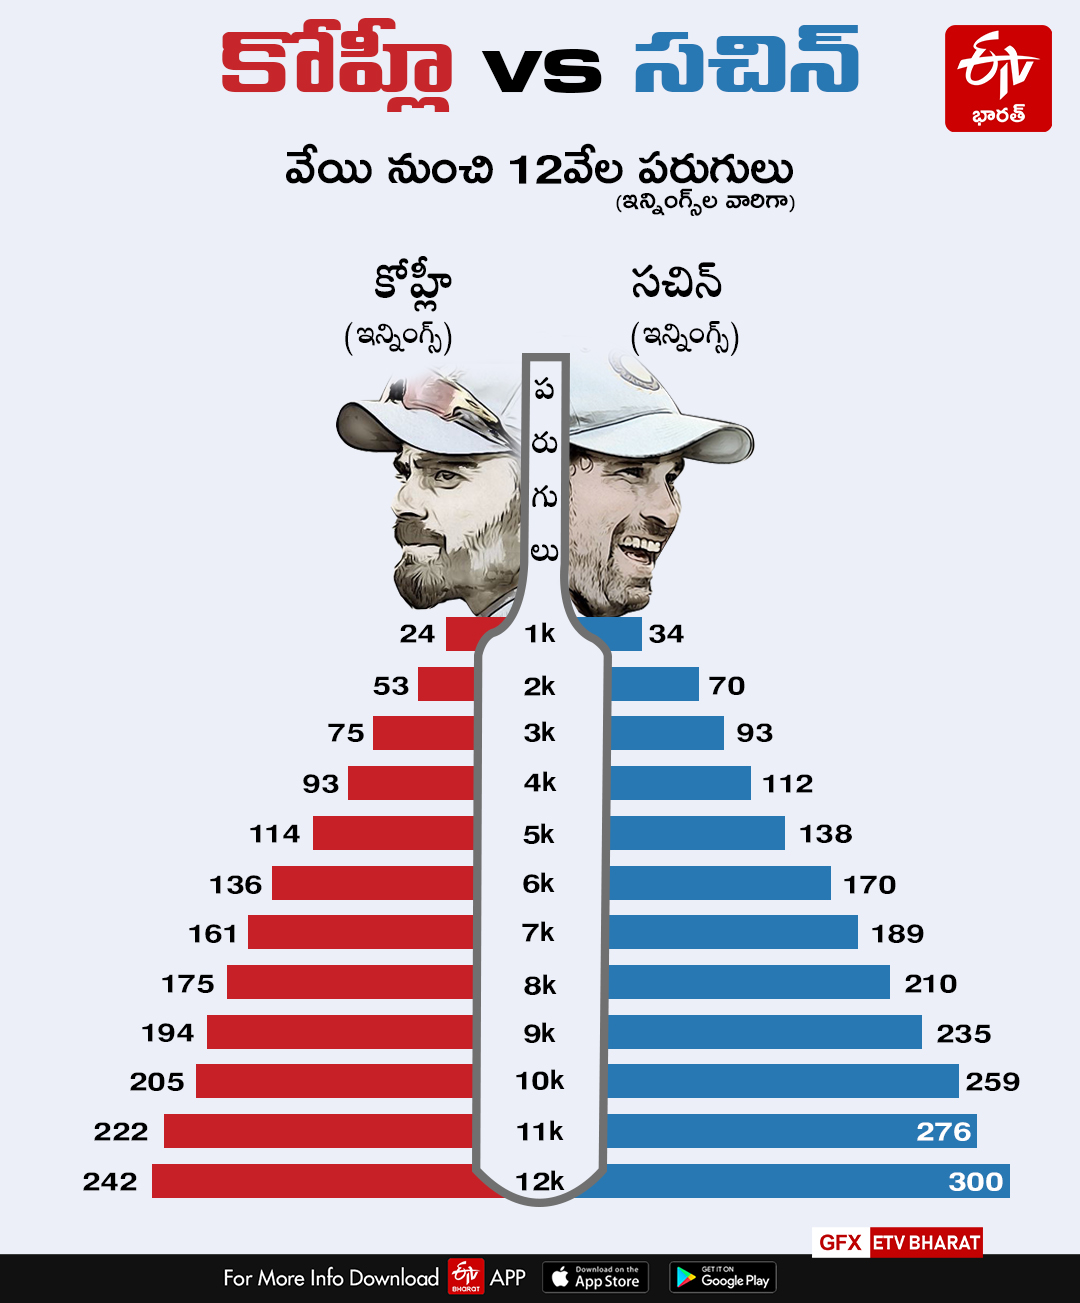 Kohli vs Sachin: The numbers game after 12,000 ODI runs